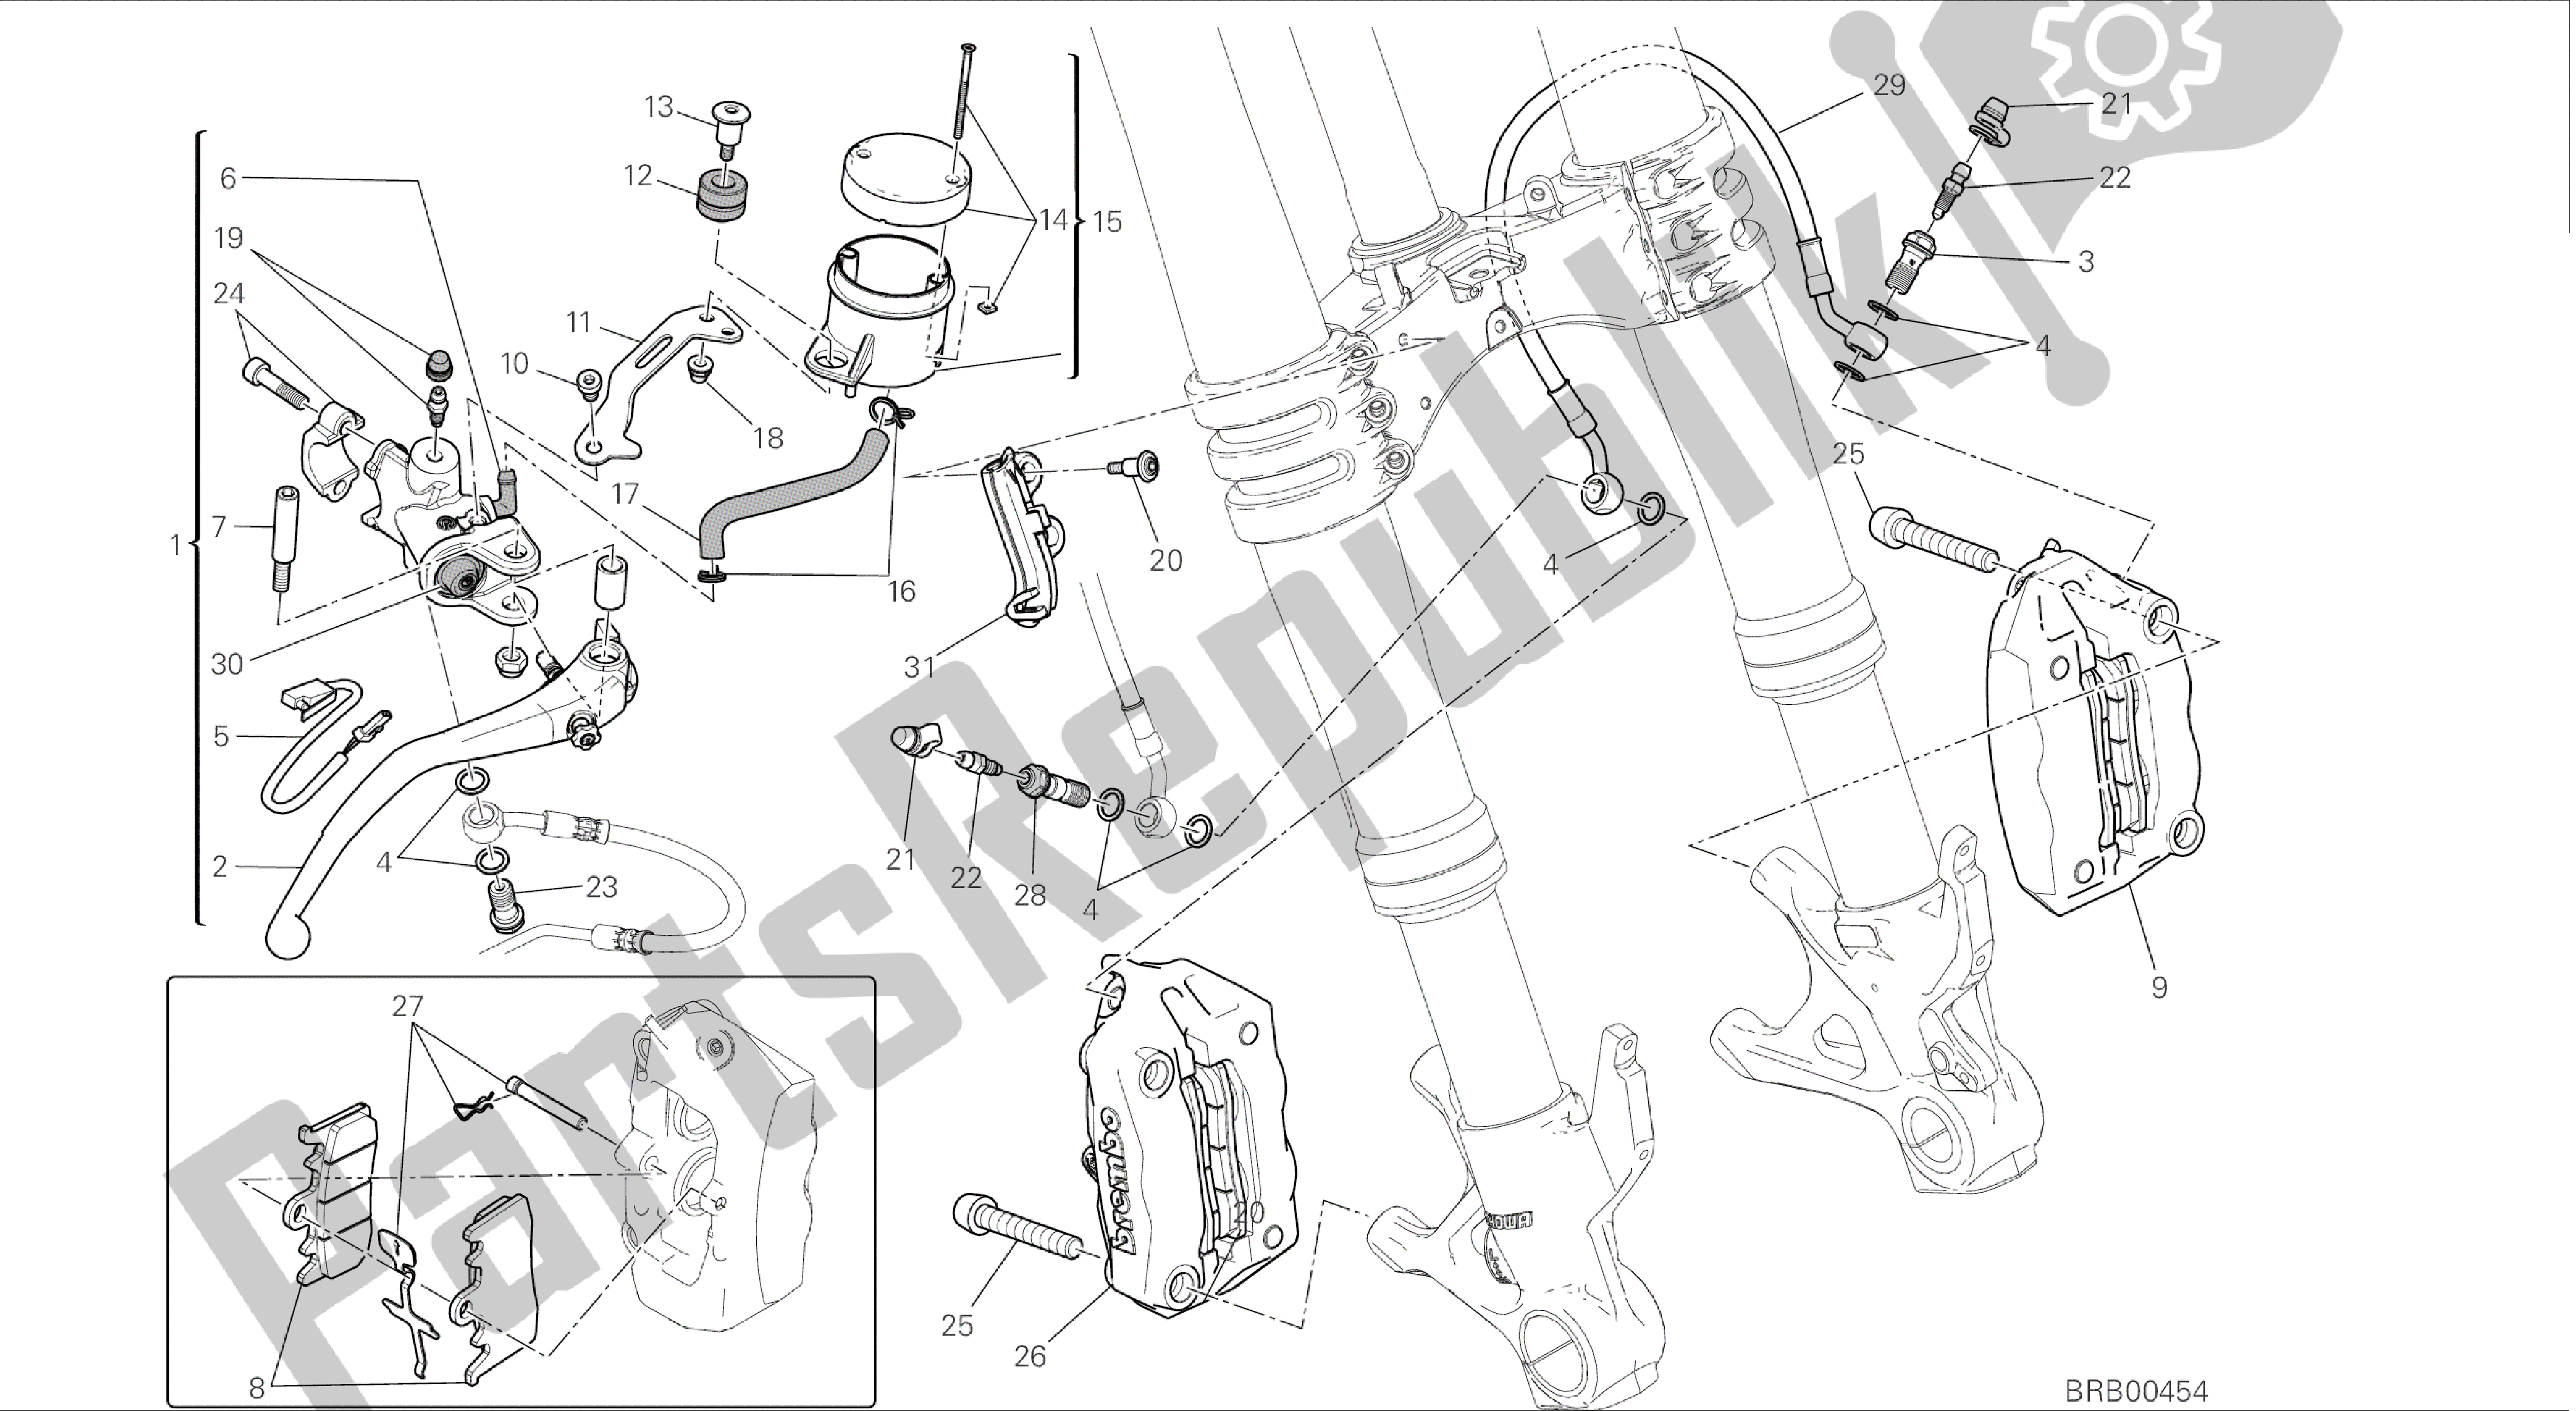 Todas las partes para Dibujo 024 - Freno Anteriore [mod: 899 Abs; Xst: Marco De Grupo Aus, Eur, Fra, Jap, Twn] de Ducati Panigale 899 2014